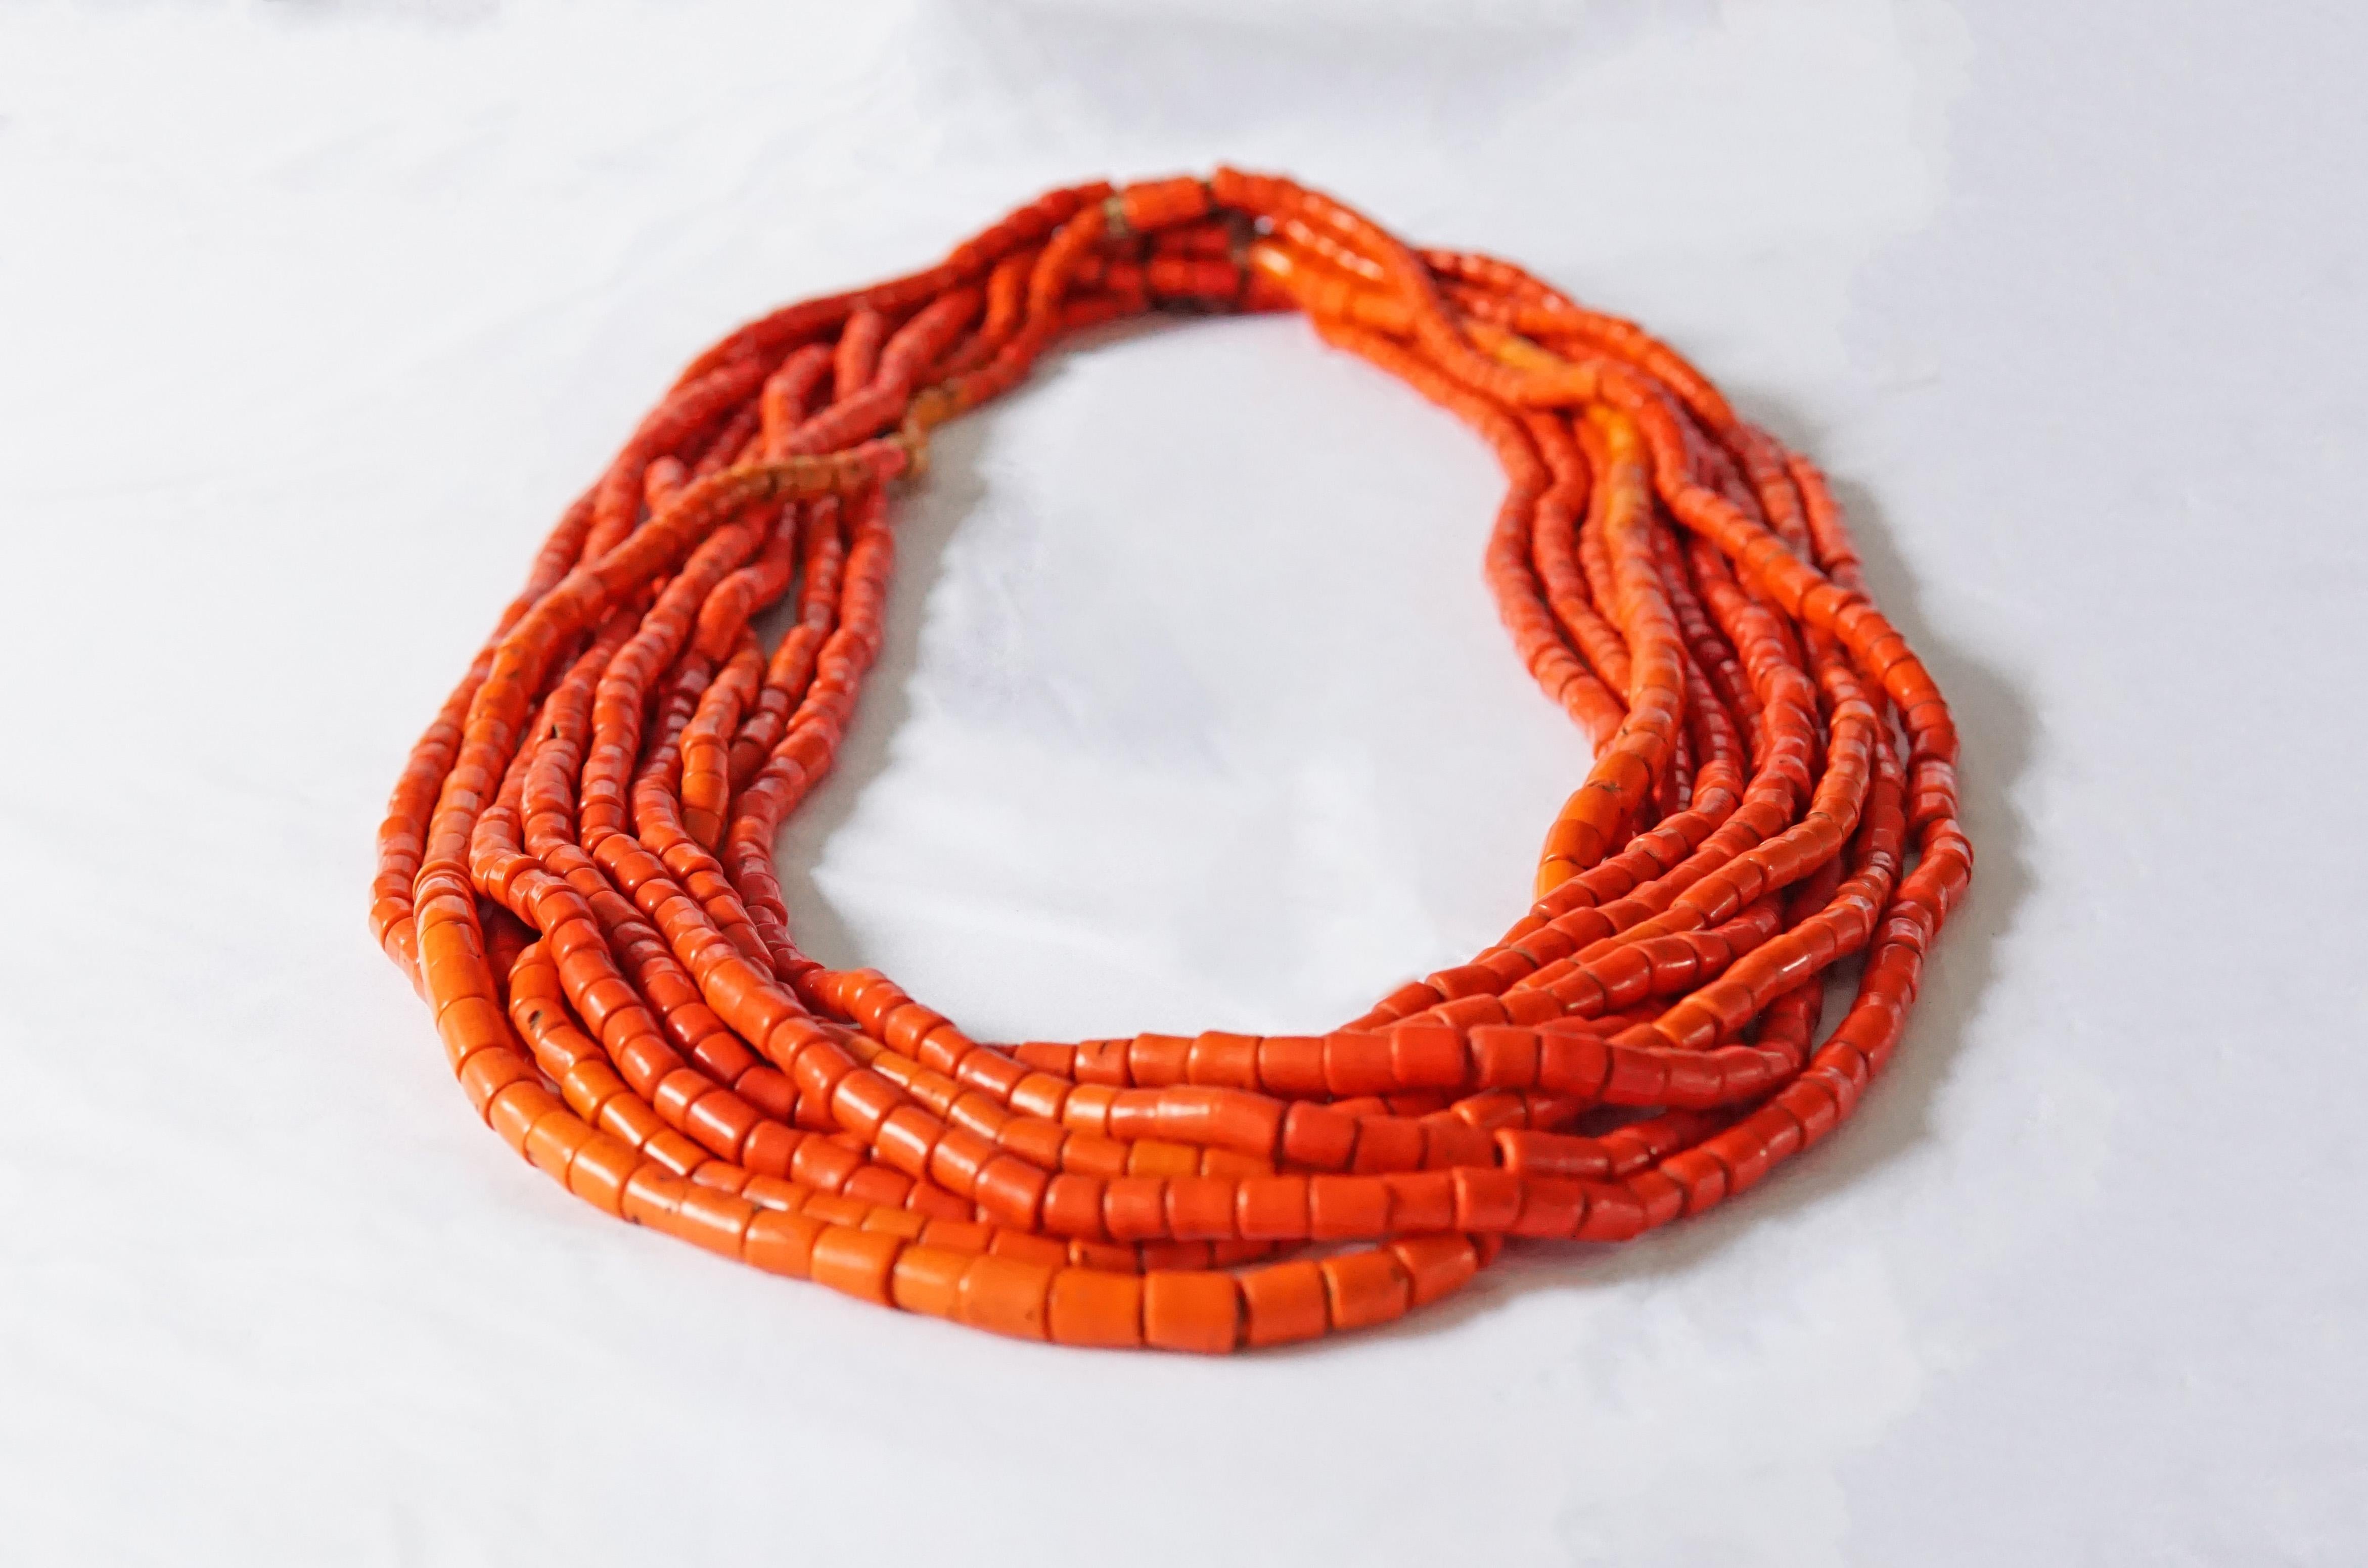 Eine 10-strängige Halskette, handgefertigt aus rot-orangen Naga-Perlen aus dem frühen 20. Jahrhundert und mit Naturfasern bespannt. Halsketten wie diese waren ein Statussymbol und ein wichtiger Gegenstand inmitten der Mitgift der Frauen. Die Perlen